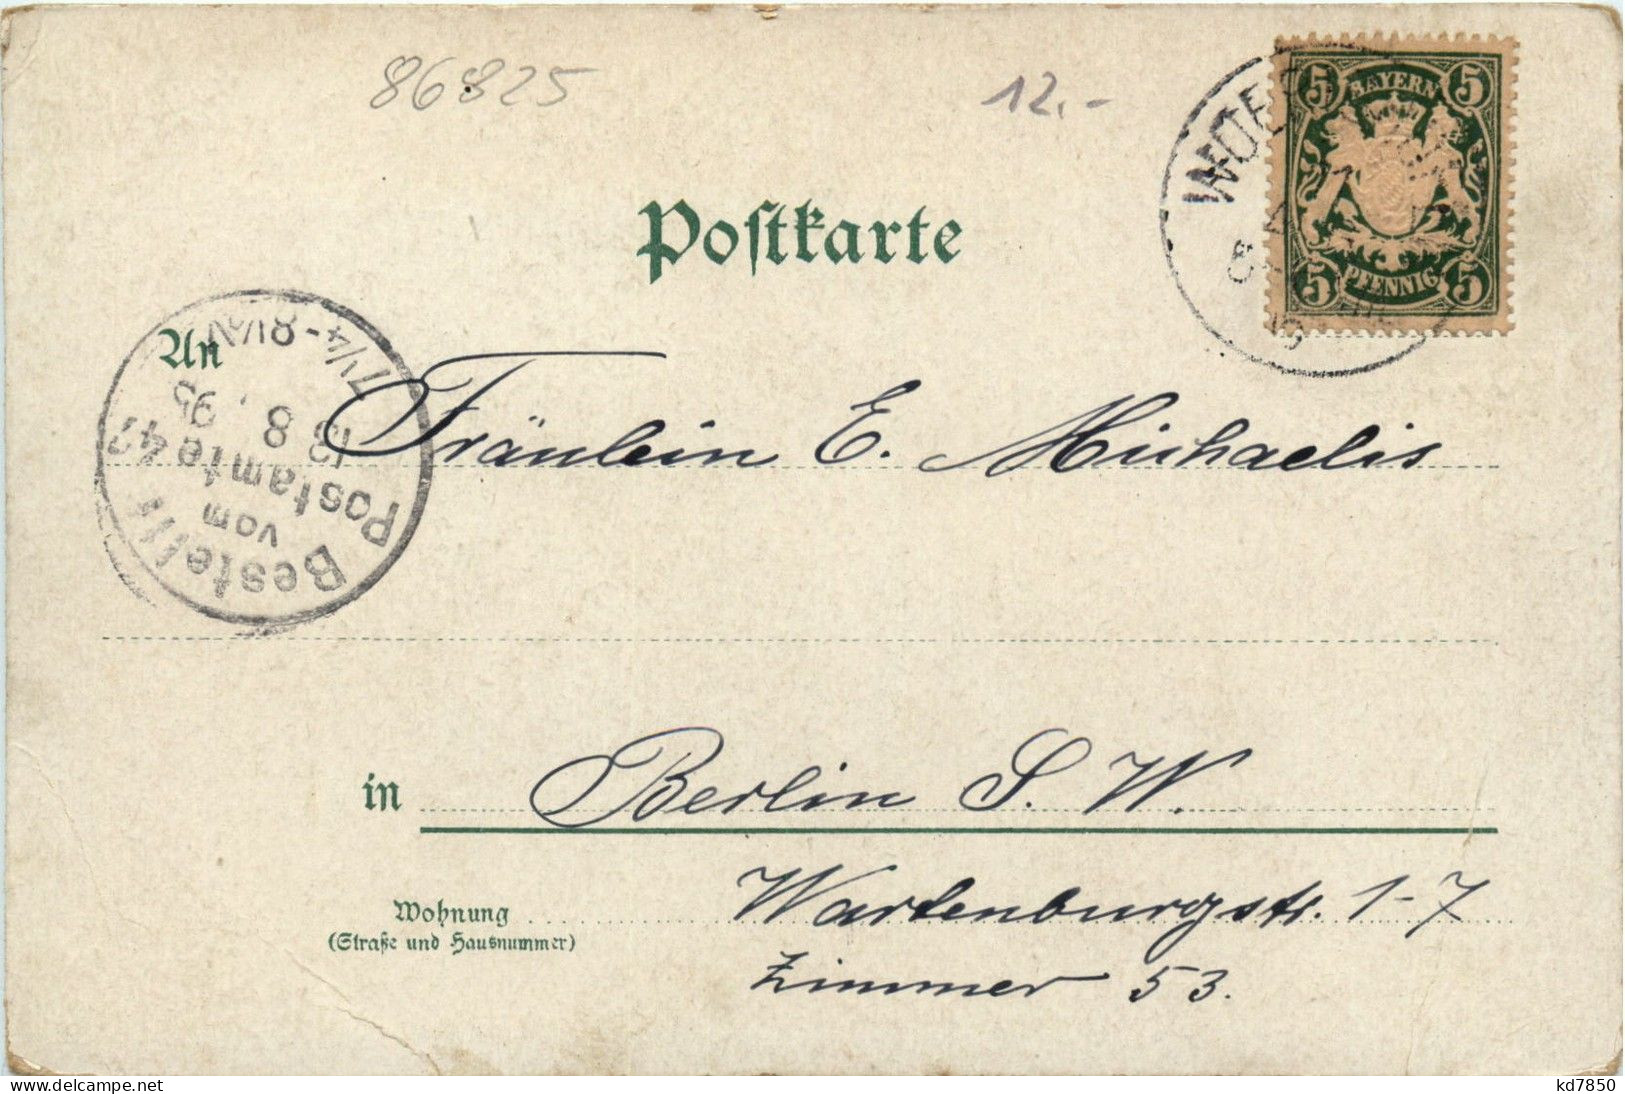 Gruss Aus Woerishofen - Litho 1895 - Bad Wörishofen